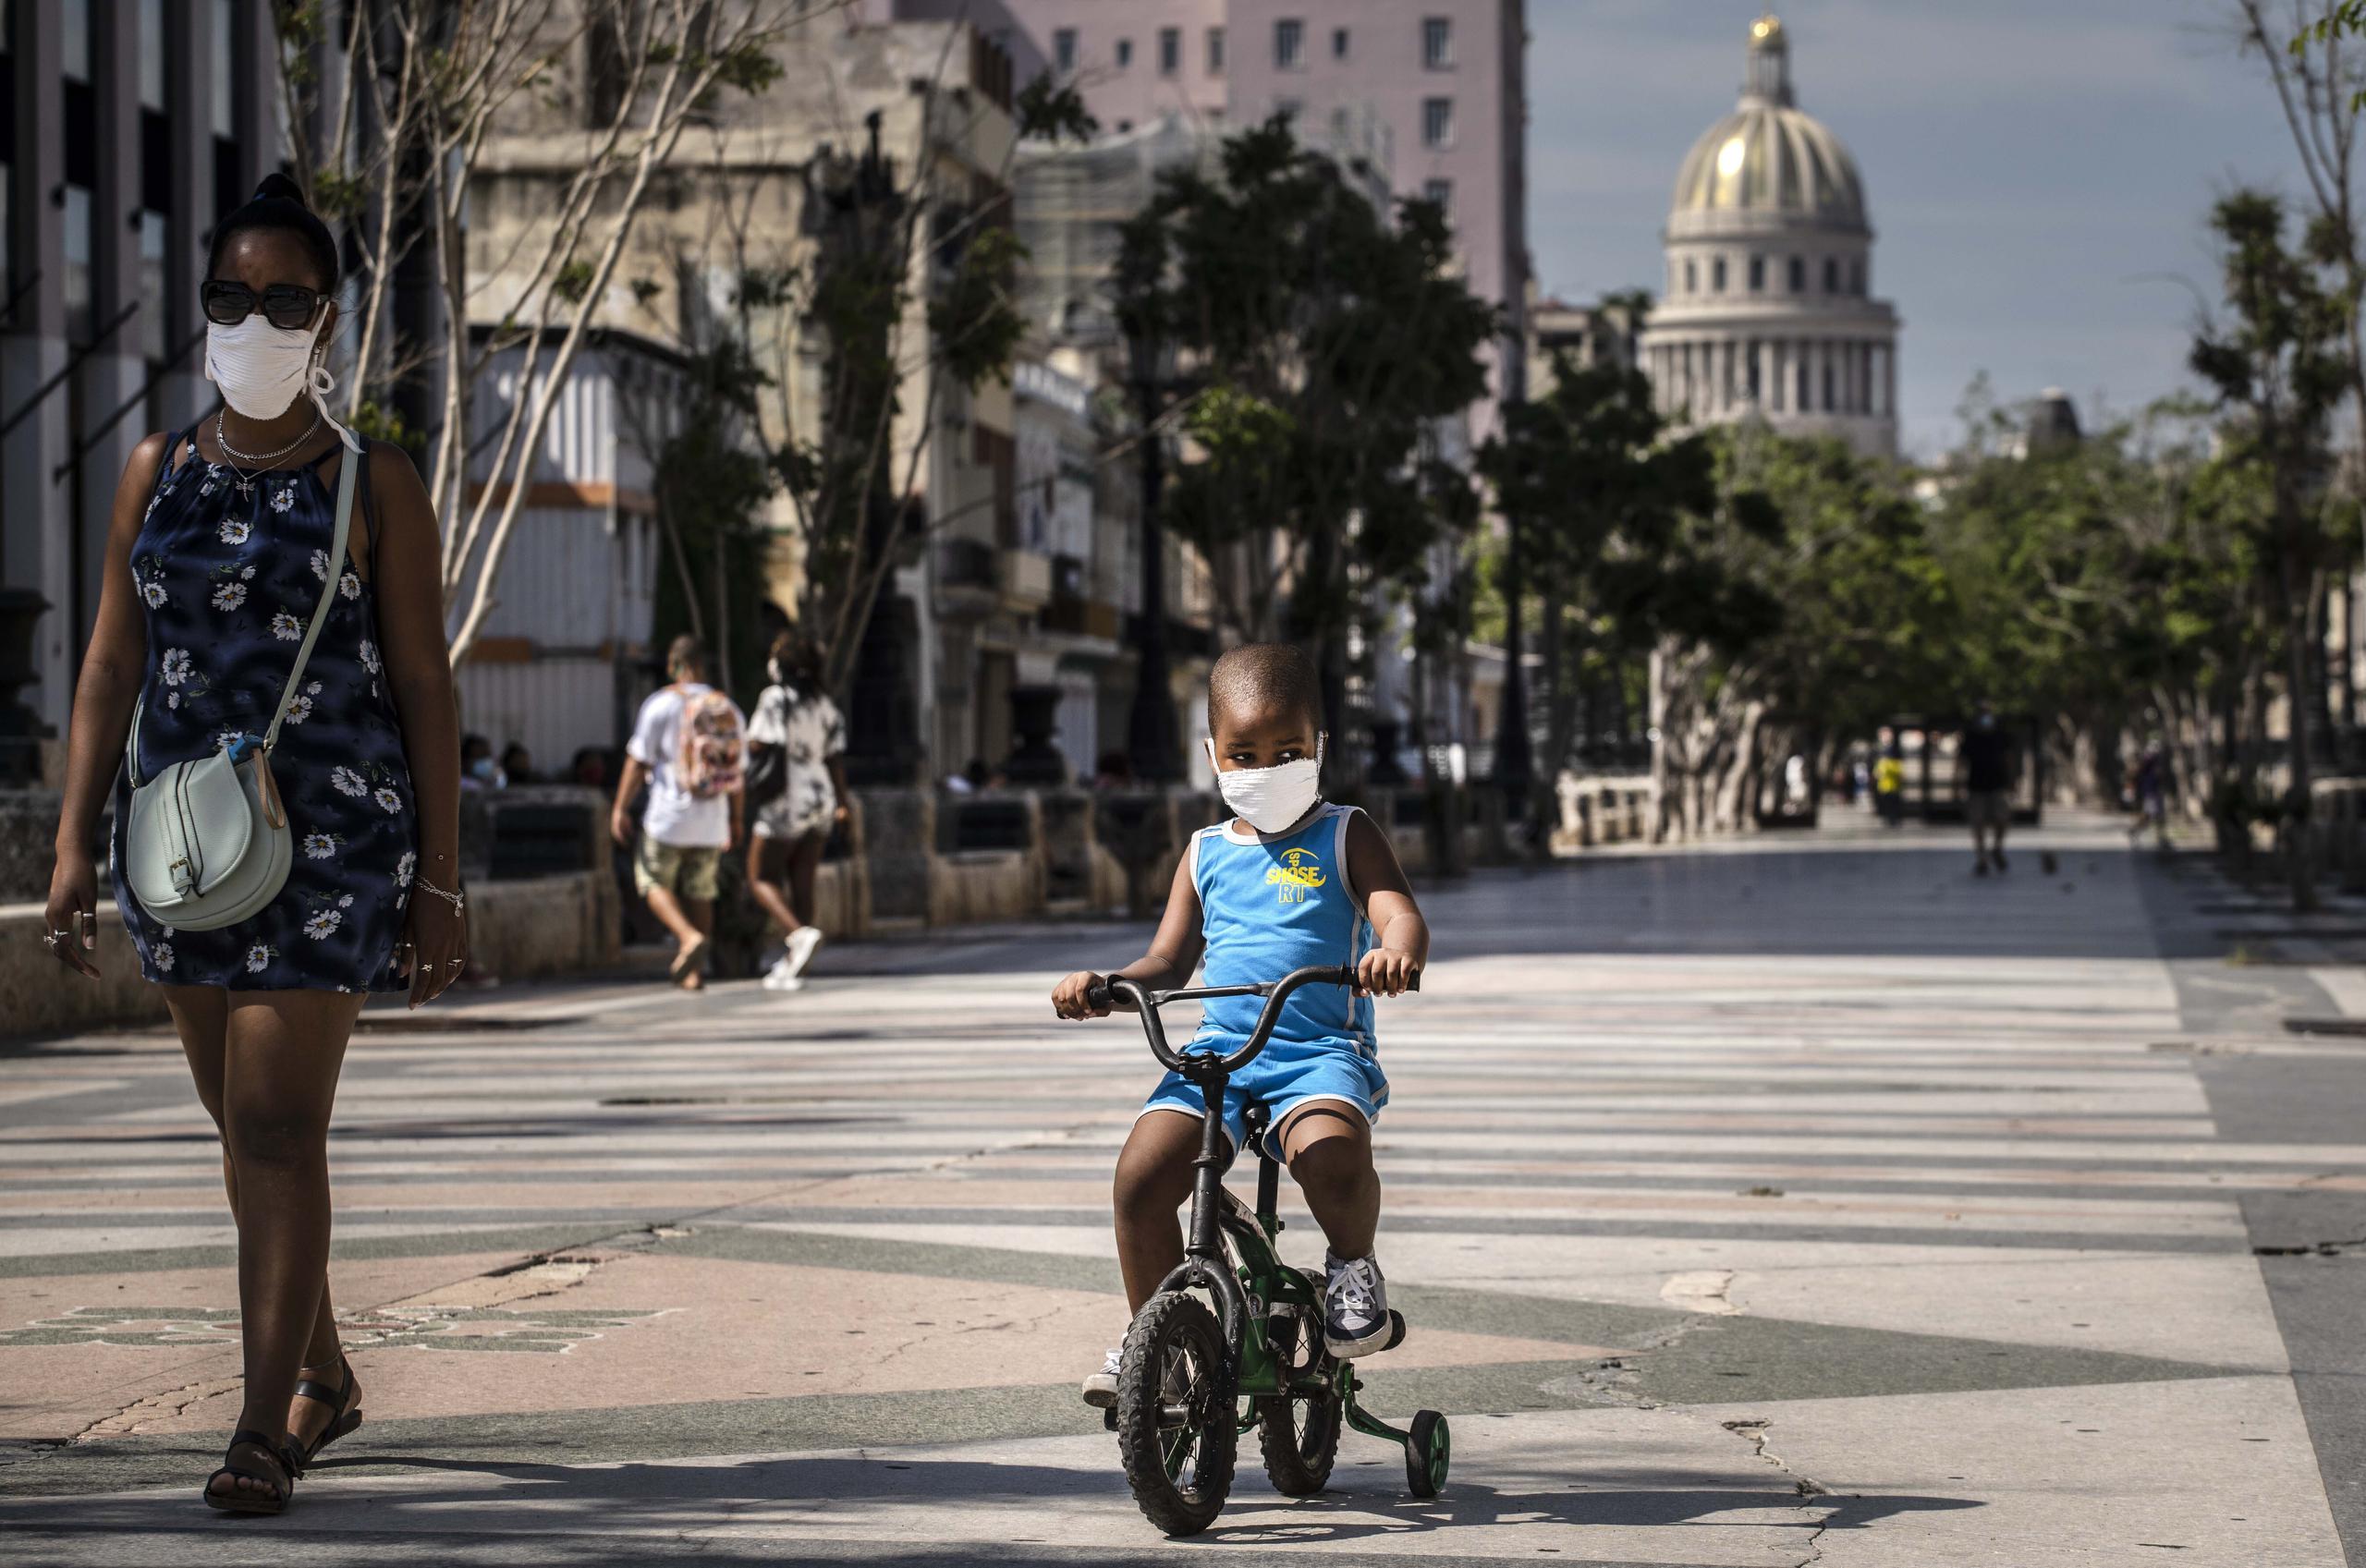 Una mujer acompaña a un niño en bicicleta, ambos con mascarillas protectoras como medida de precaución en medio de la propagación del nuevo coronavirus, en La Habana, Cuba.